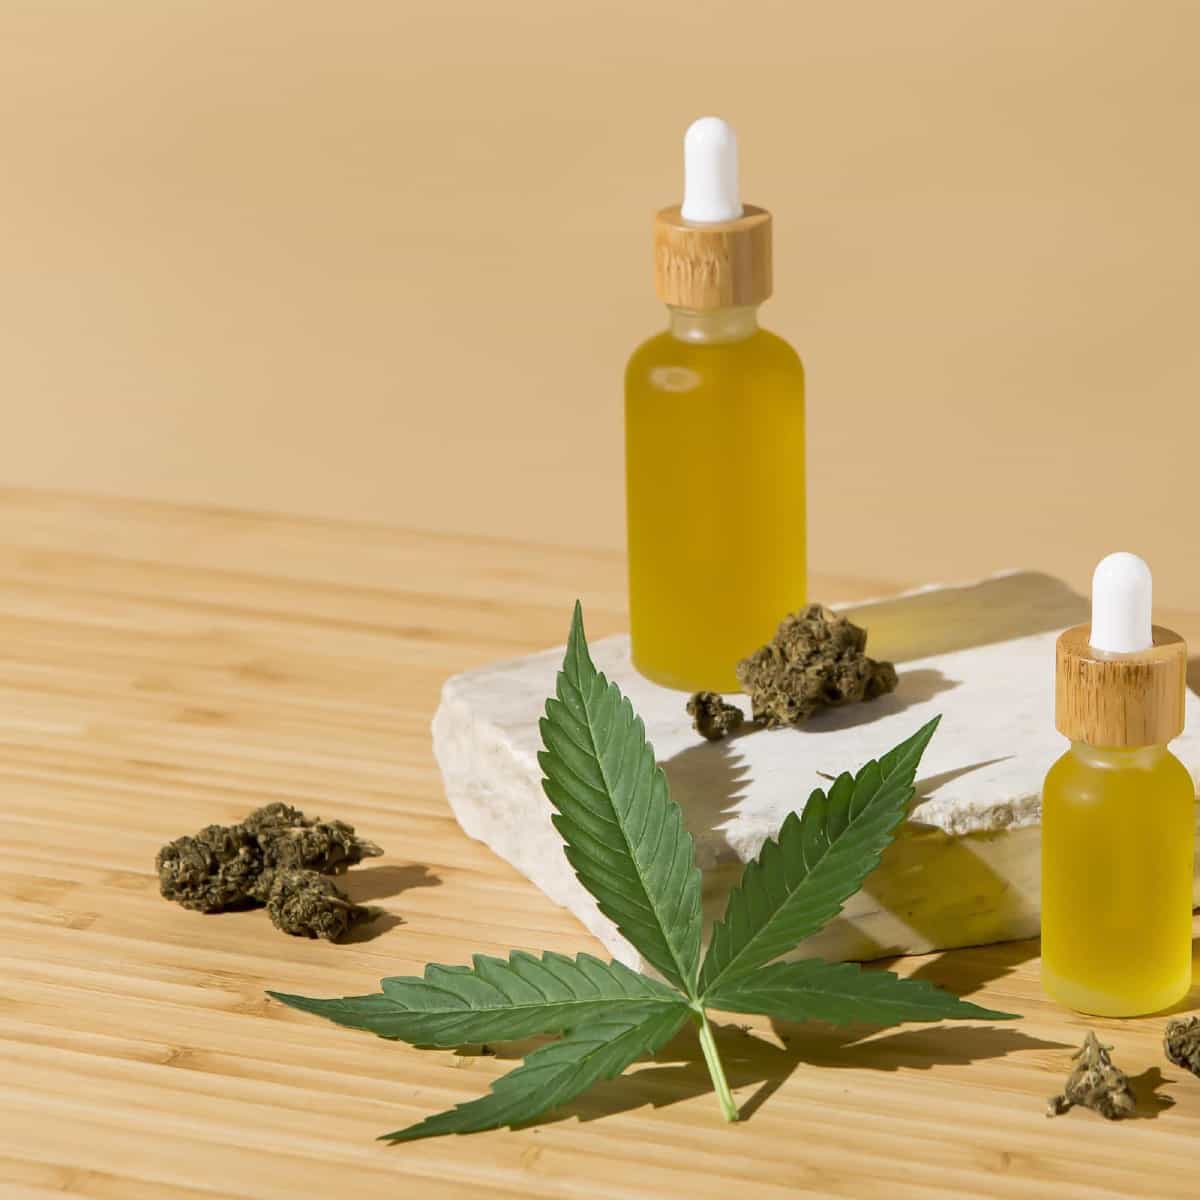 Wholesale Cannabis - Cannabis 2.0